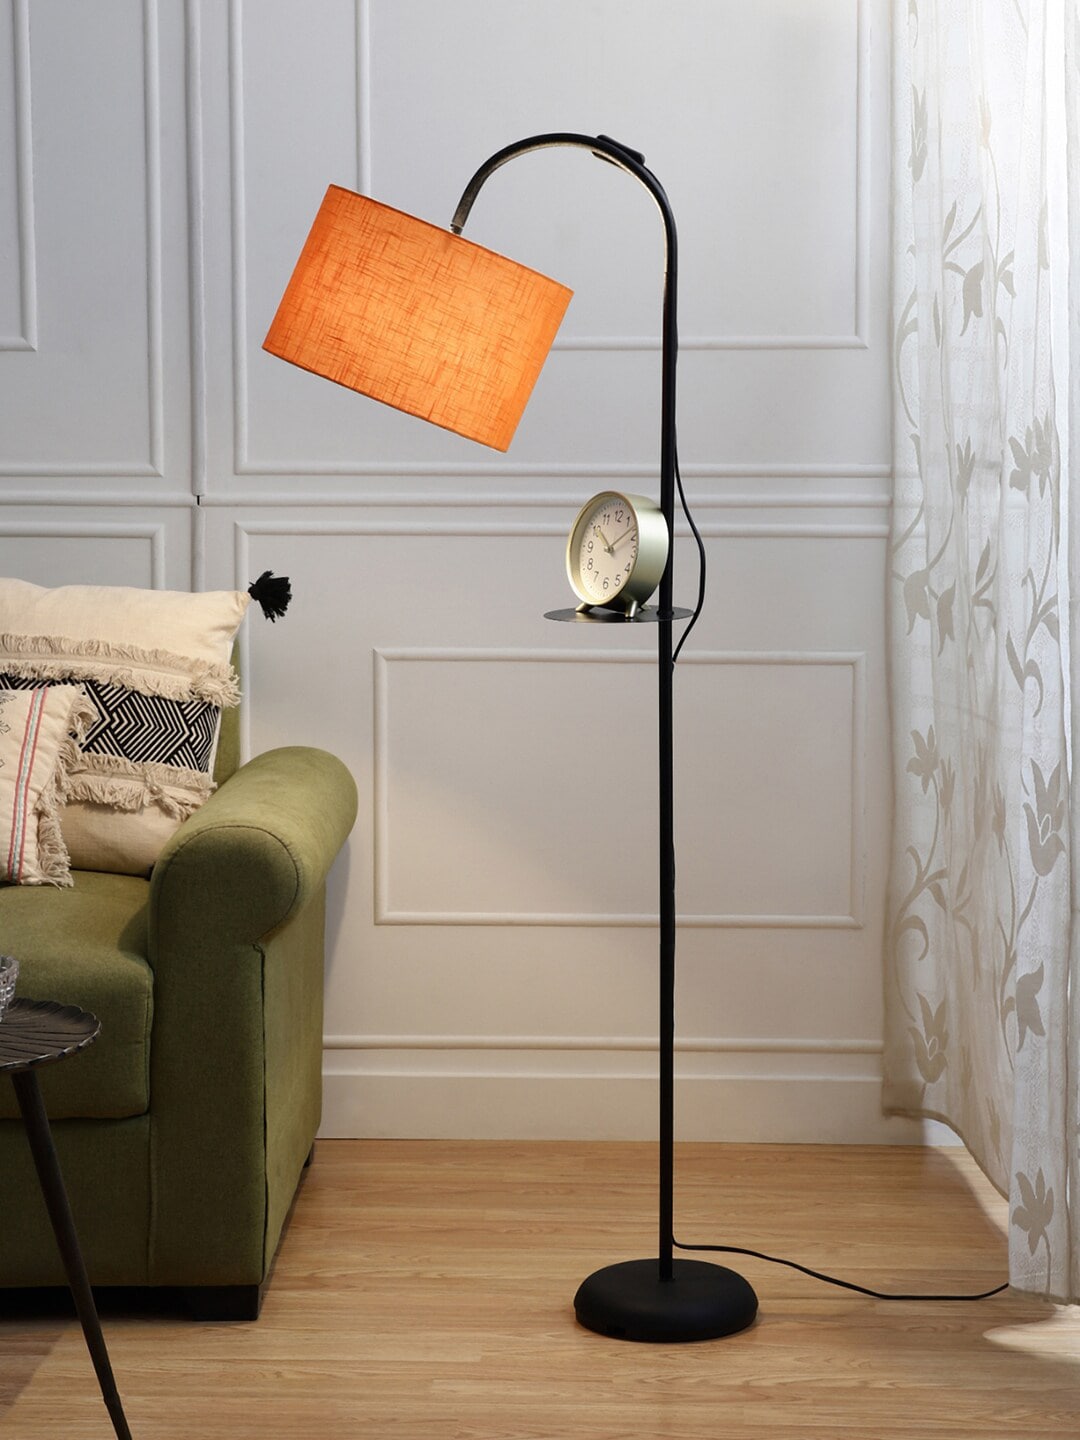 SANDED EDGE Orange Arc Floor Lamp with One Shelf Price in India